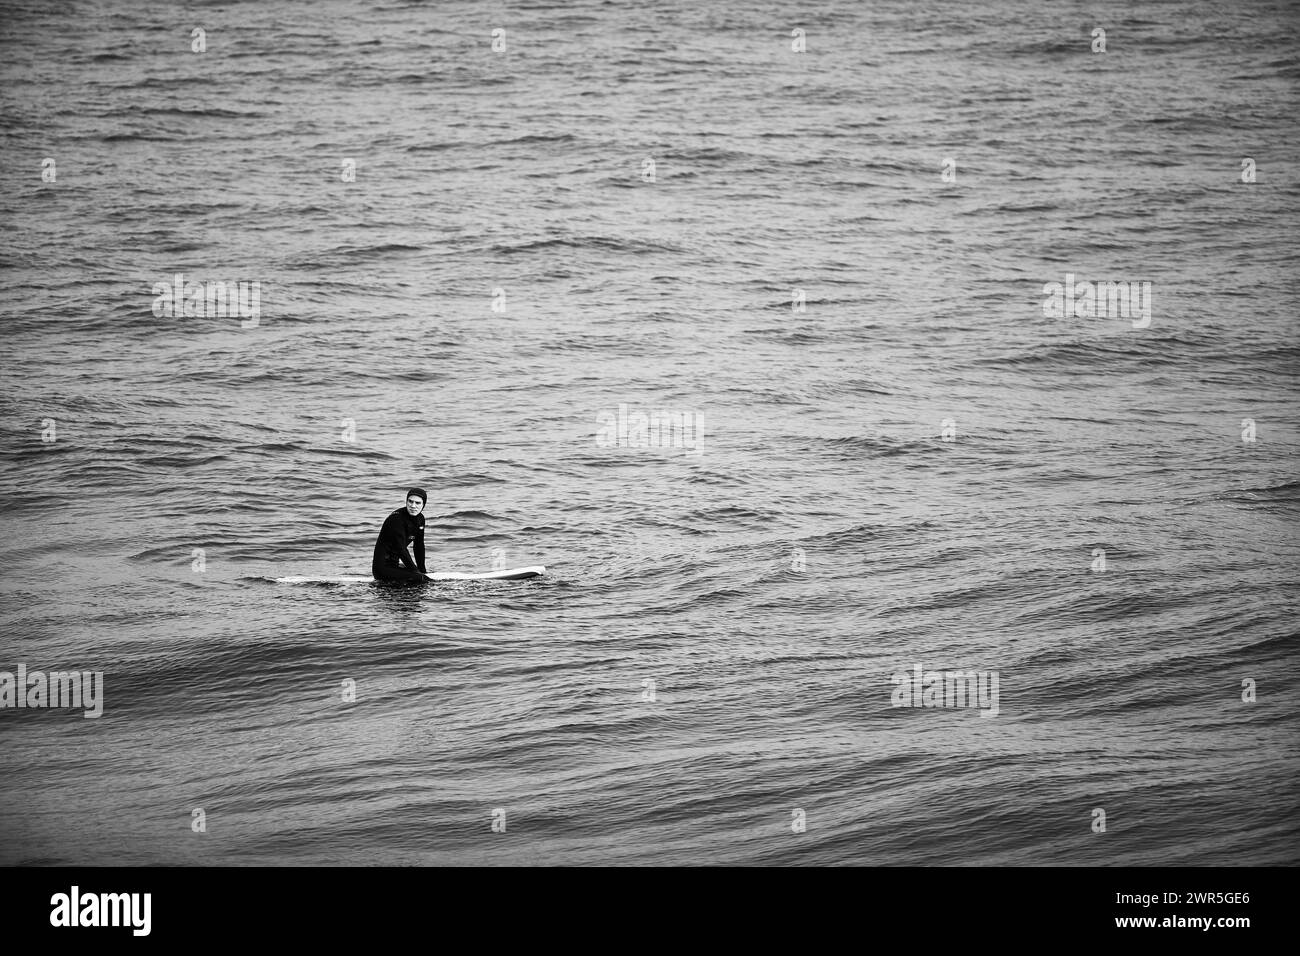 Un surfista in attesa delle onde sul mare Foto Stock